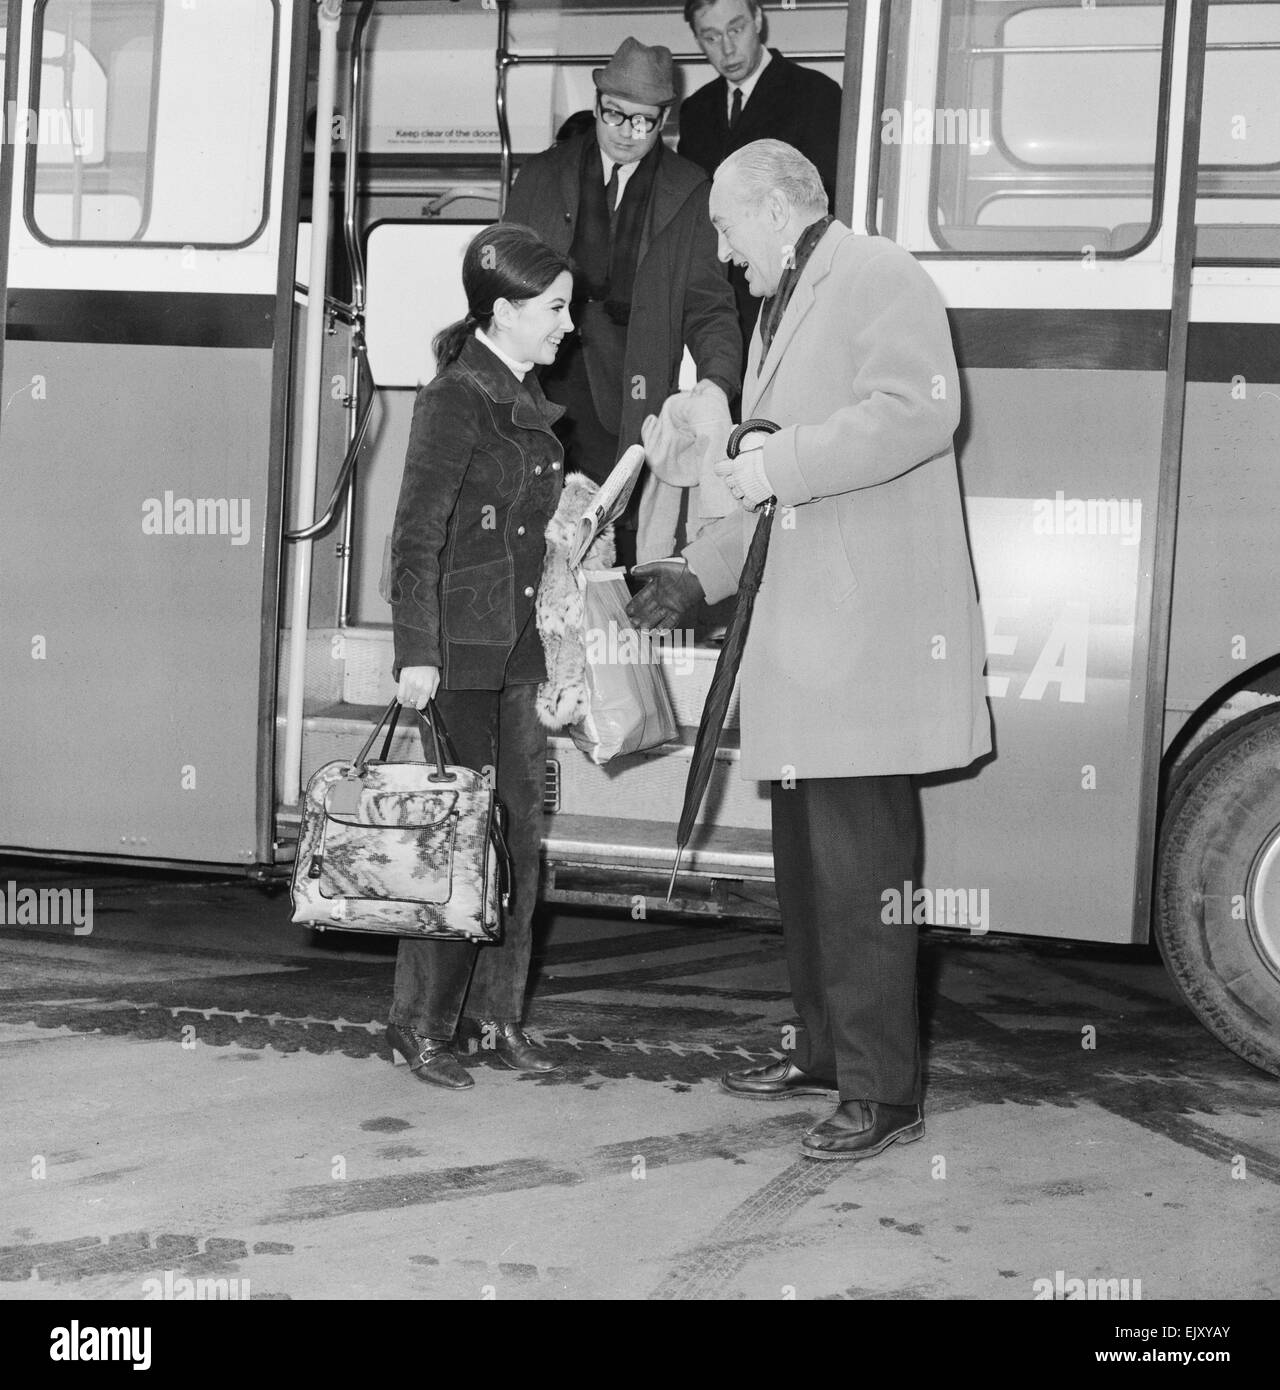 Barbara Parkins, televisione & film attrice, raffigurato in arrivo all'Aeroporto di Londra Heathrow il 21 febbraio 1969. Barbara è sul suo modo di Helsinki, per iniziare le riprese su 'Il Cremlino lettera", un thriller di spionaggio insieme all'altezza della guerra fredda. Raffigurata con l'attore George Sanders, che è anche la voce per lo stesso set di un film. È la prima volta che hanno incontrato, che è stato introdotto dai fotografi. Foto Stock